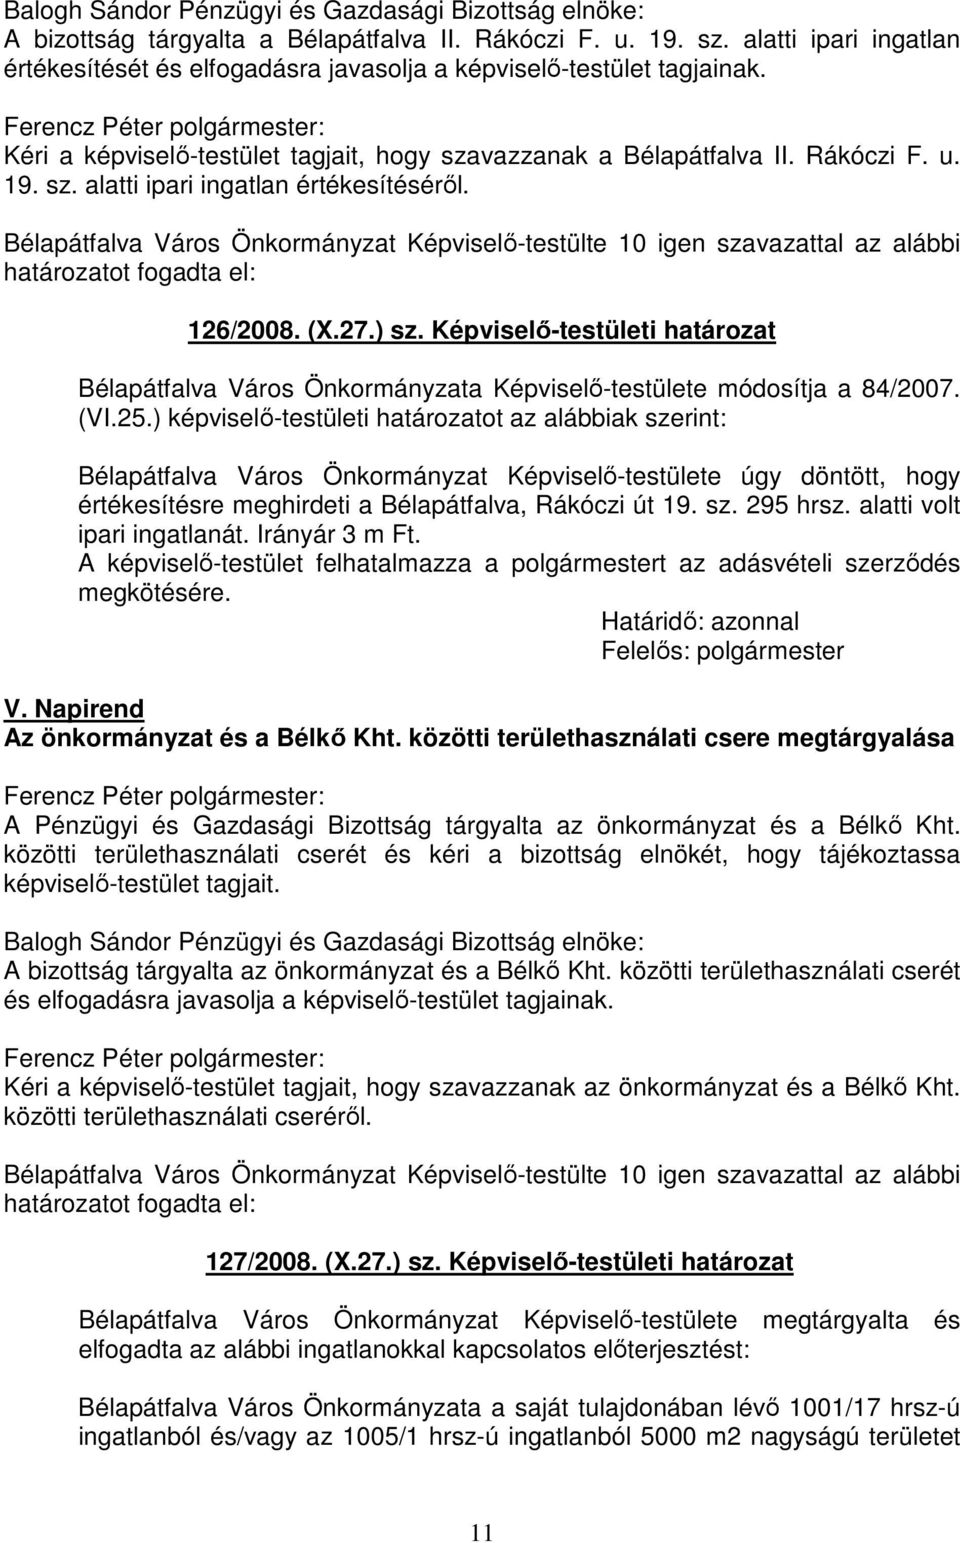 Bélapátfalva Város Önkormányzat Képviselő-testülte 10 igen szavazattal az alábbi 126/2008. (X.27.) sz.